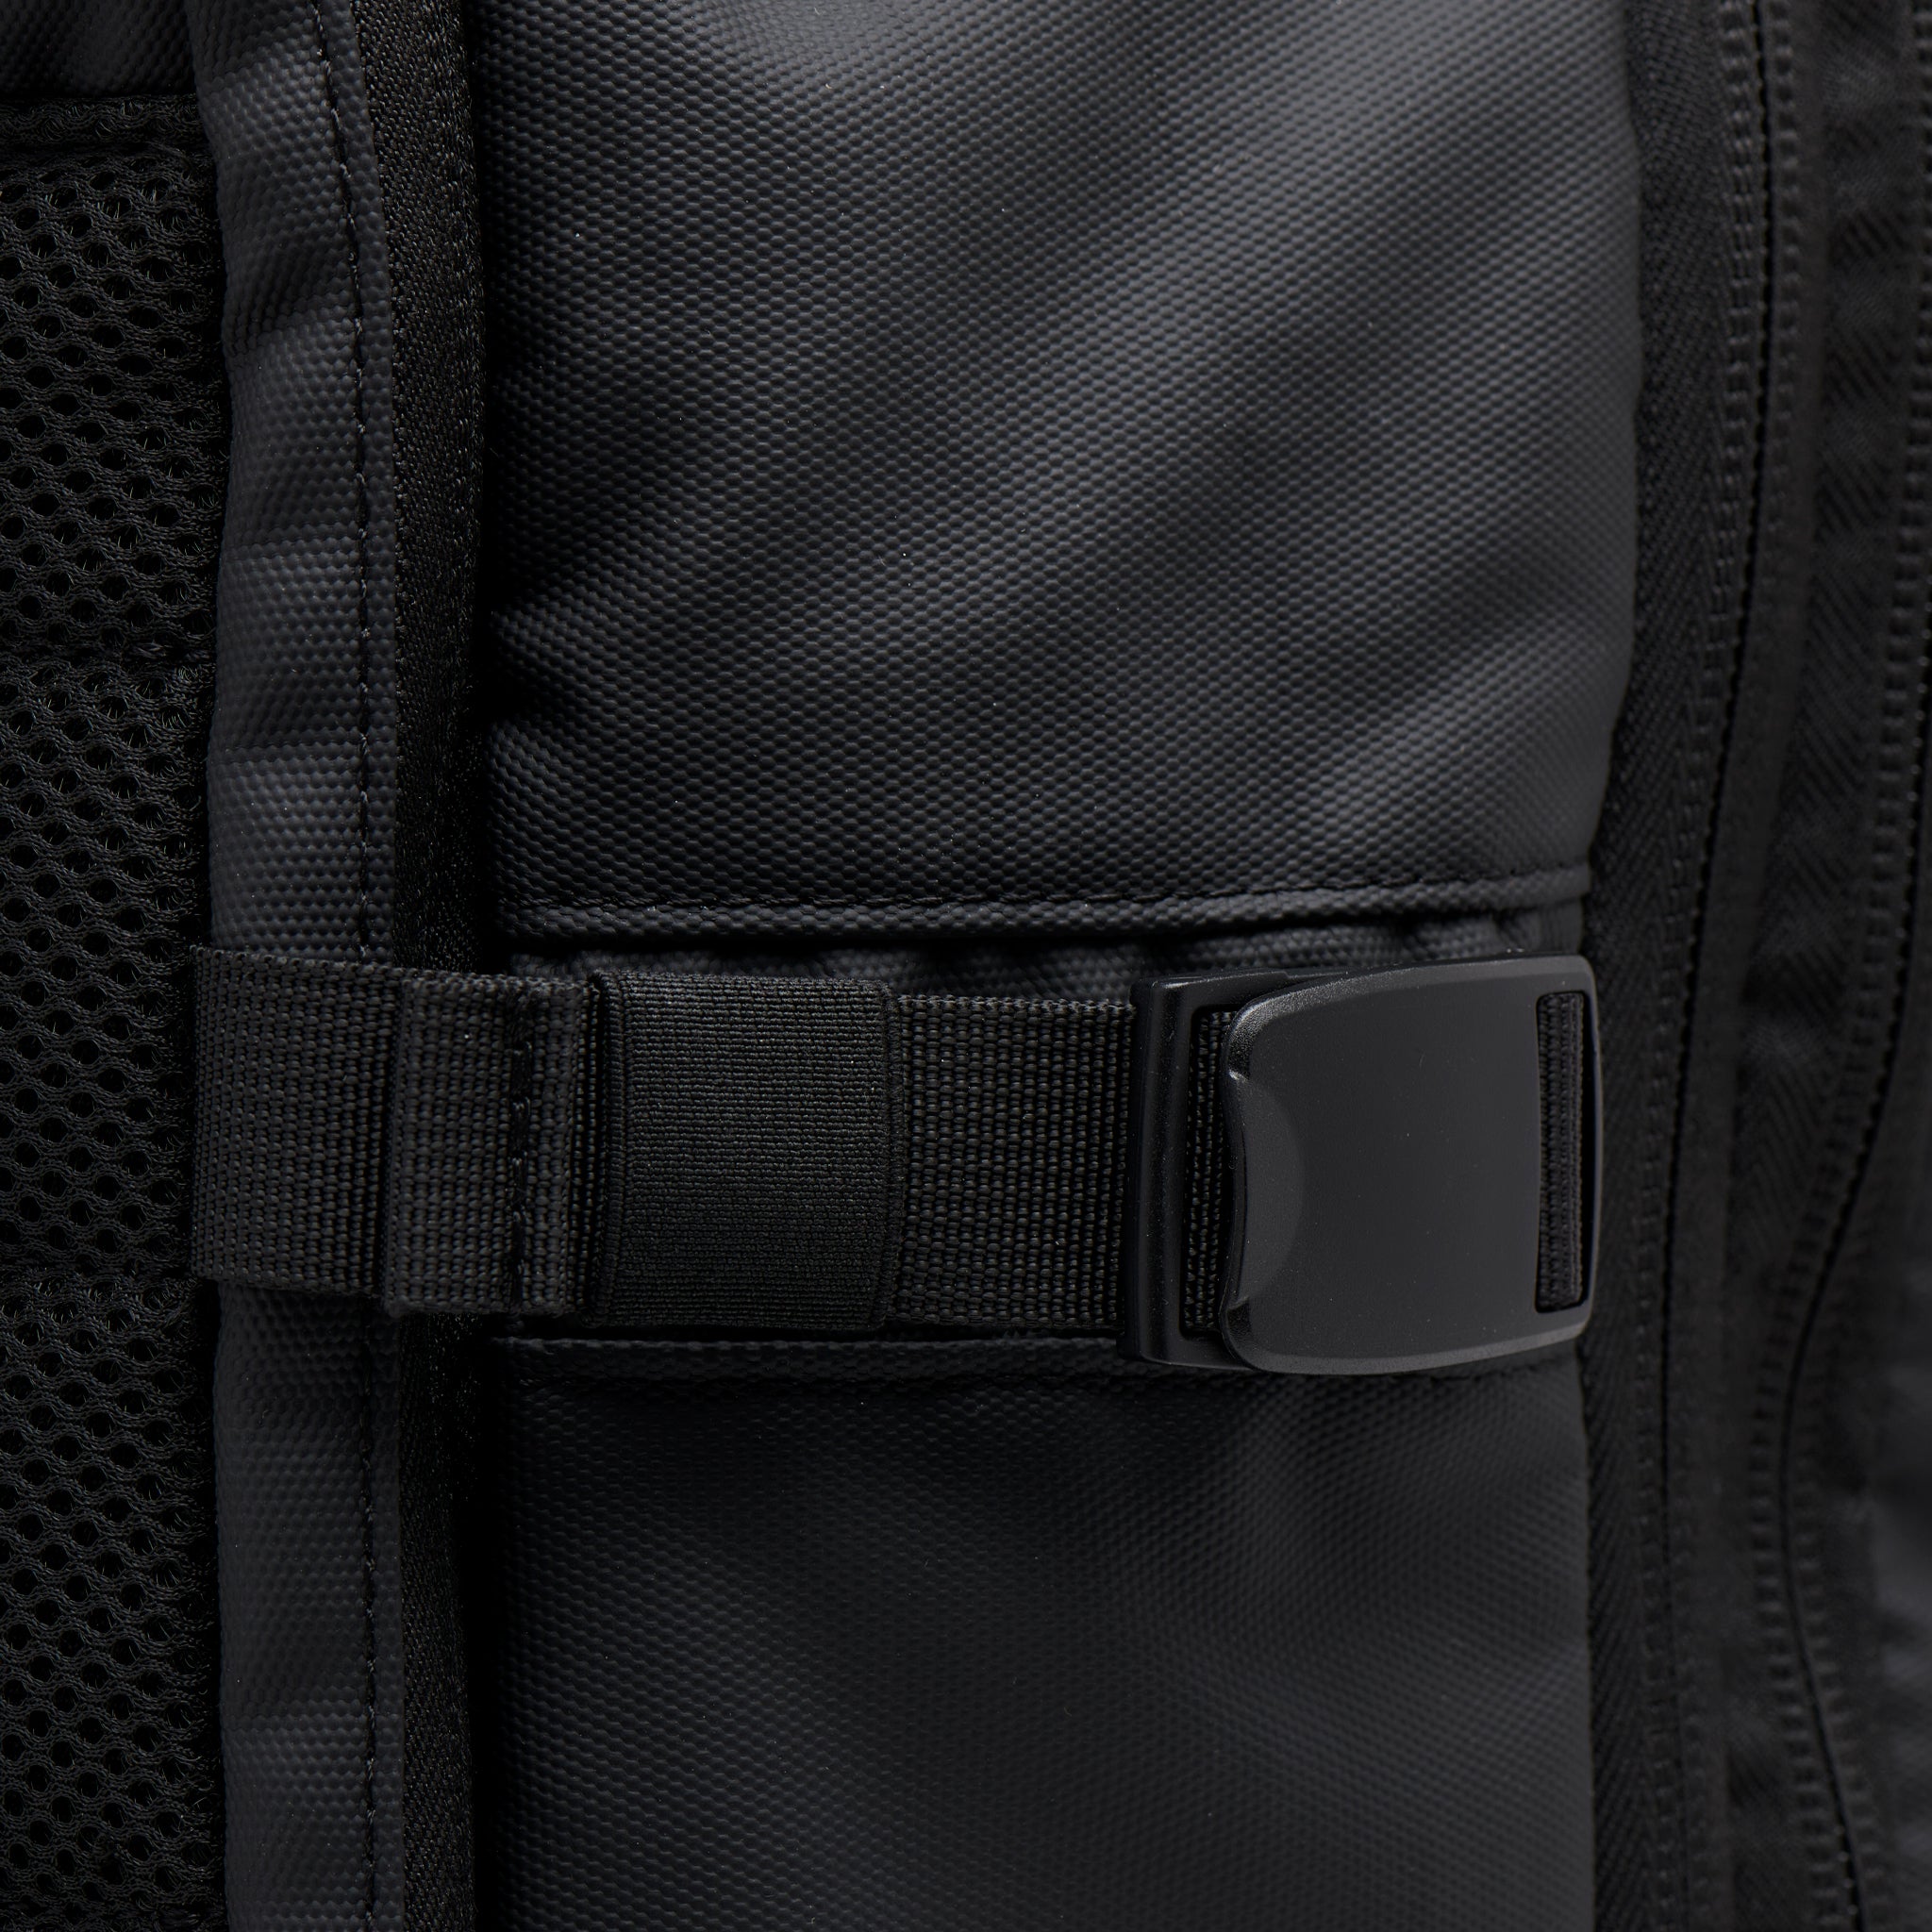 Mueslii travel backpack, made of PU coated waterproof nylon